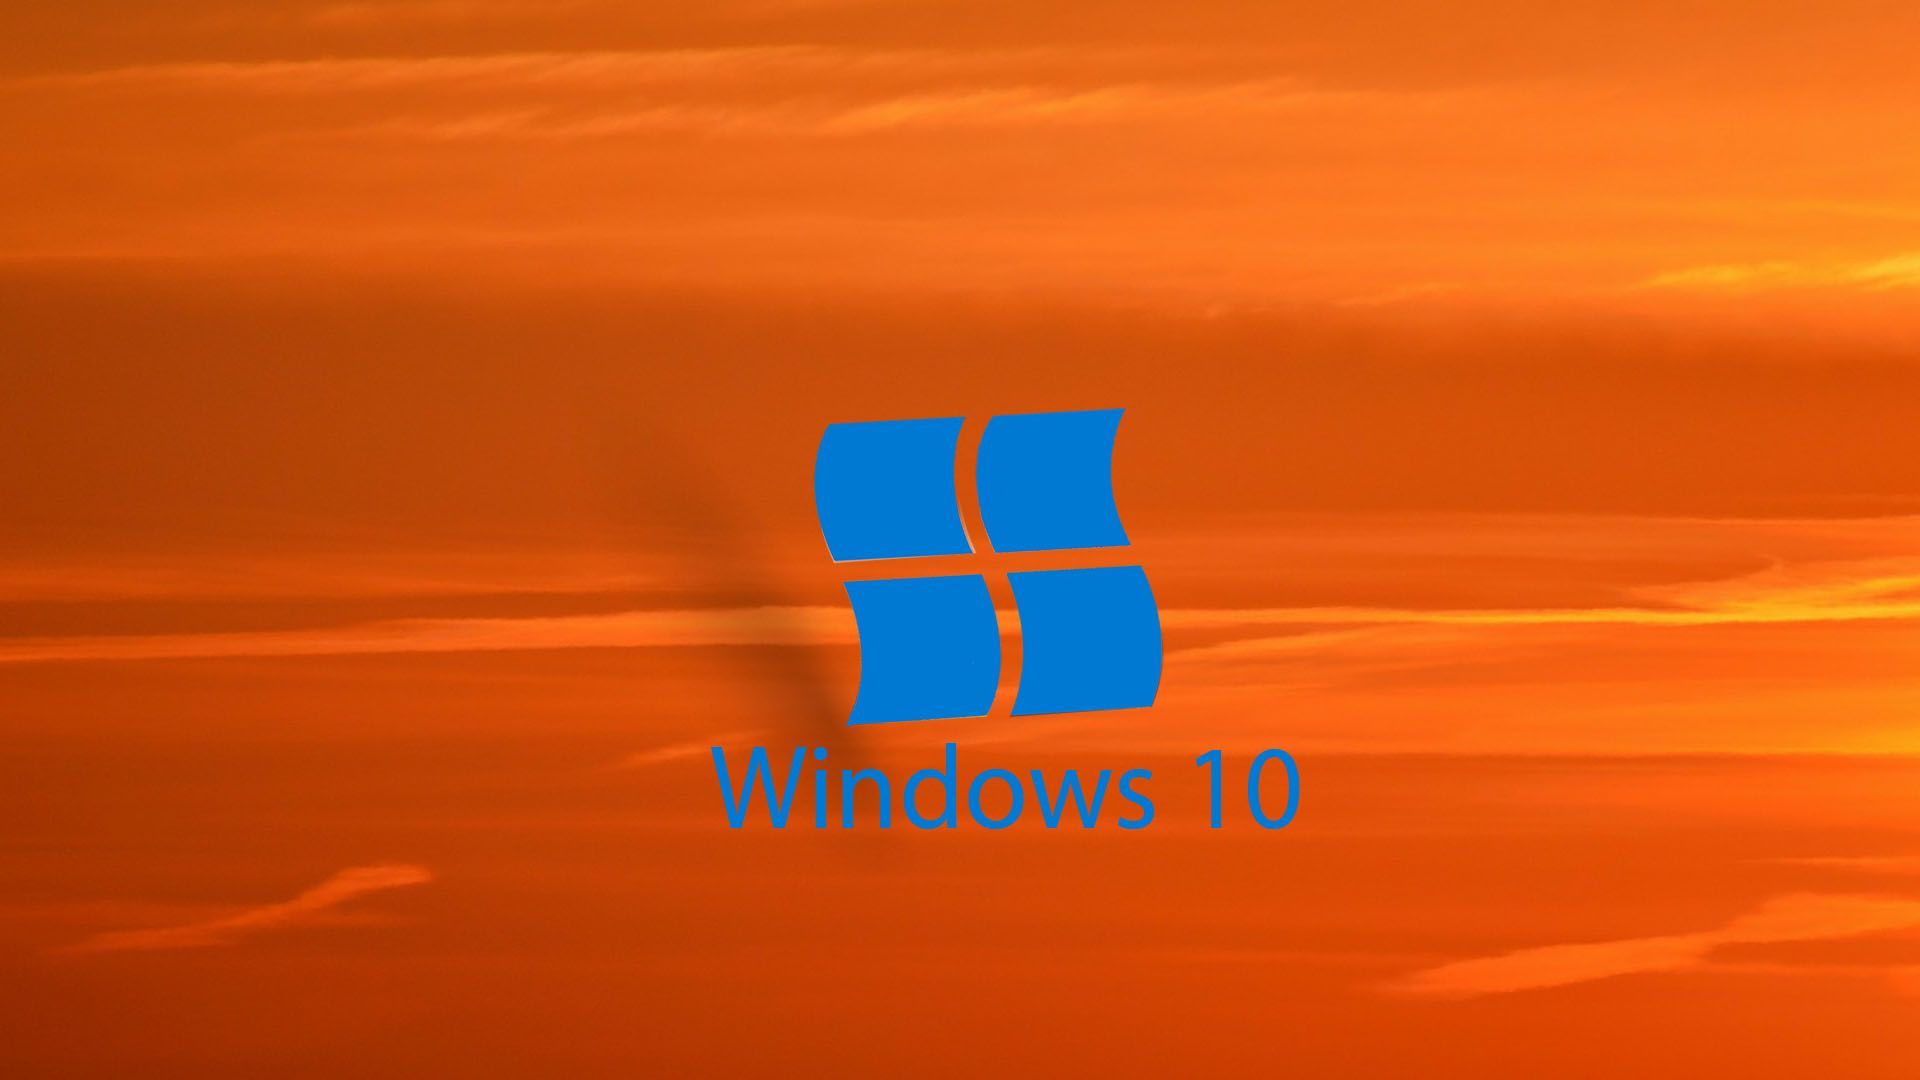 Hình nền Windows 10 màu cam - Wallpaper Cave: Màu cam là một trong những màu sắc phổ biến của Windows 10 và giờ đây bạn có thể tìm thấy những hình nền cam ấn tượng trên Wallpaper Cave. Hãy cùng khám phá các hình nền hấp dẫn và làm cho màn hình của bạn trở nên độc đáo và phong cách hơn bao giờ hết.